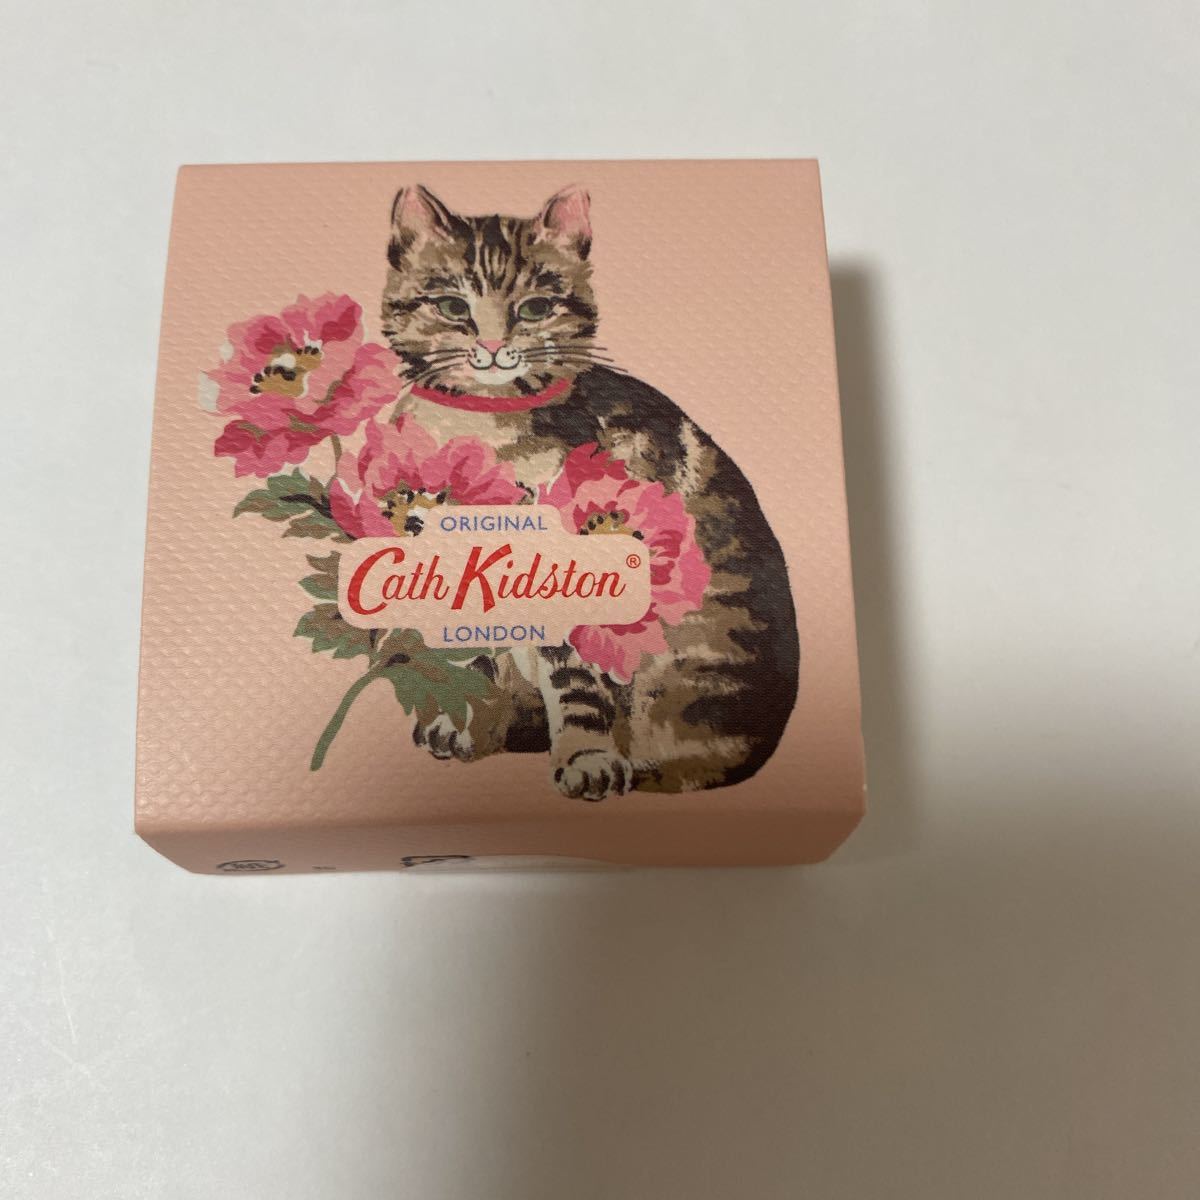  Cath Kidston "губа" балка m кошка & цветок 9ml